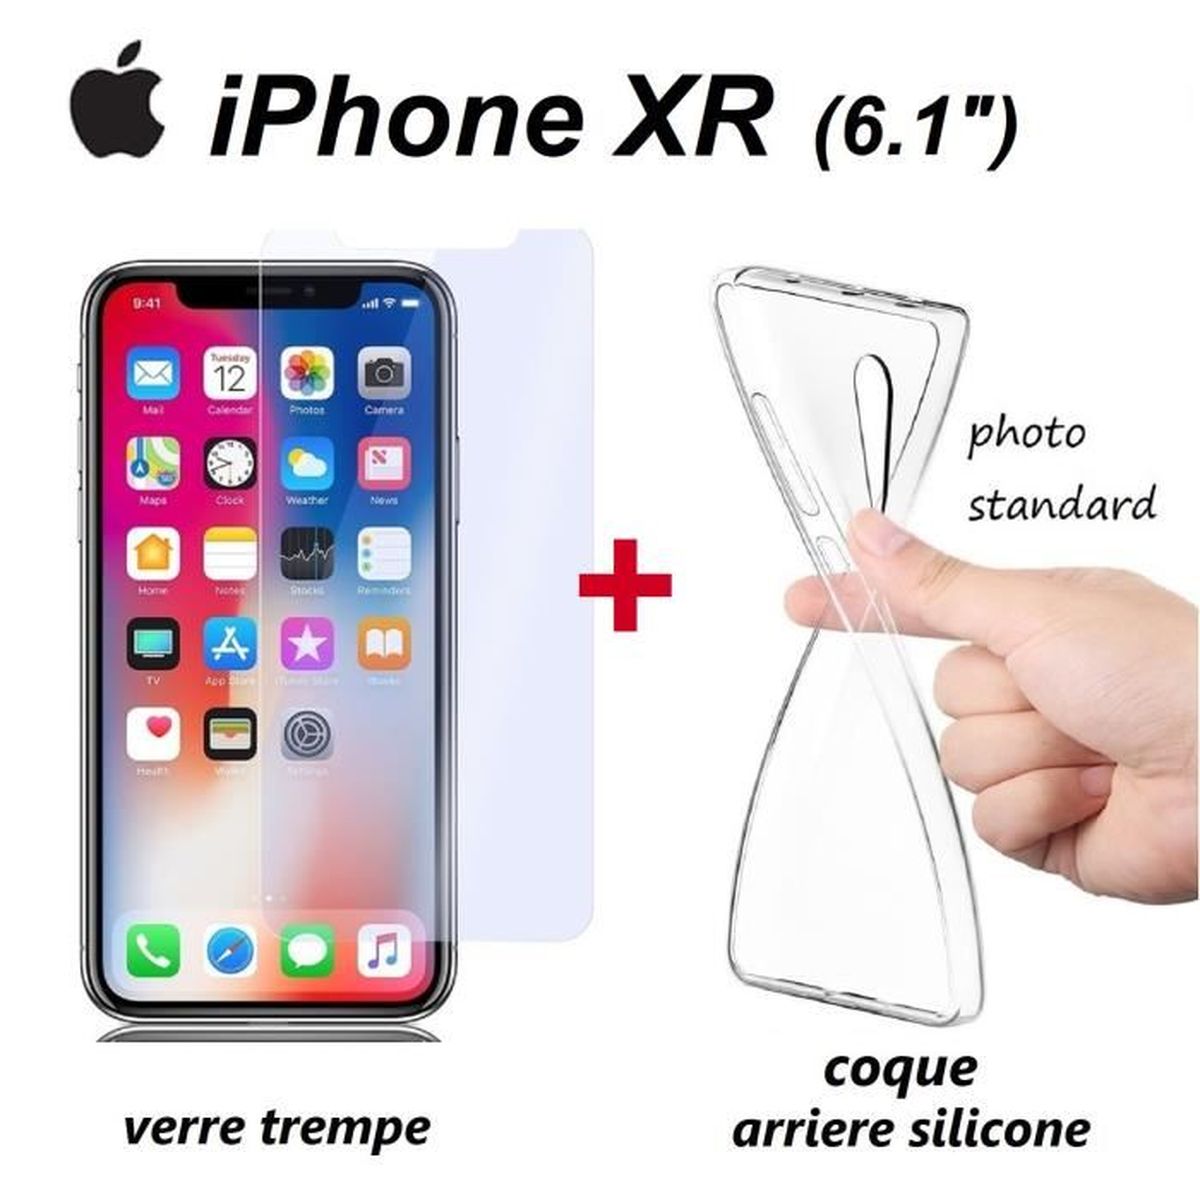 coque bumper iphone xr